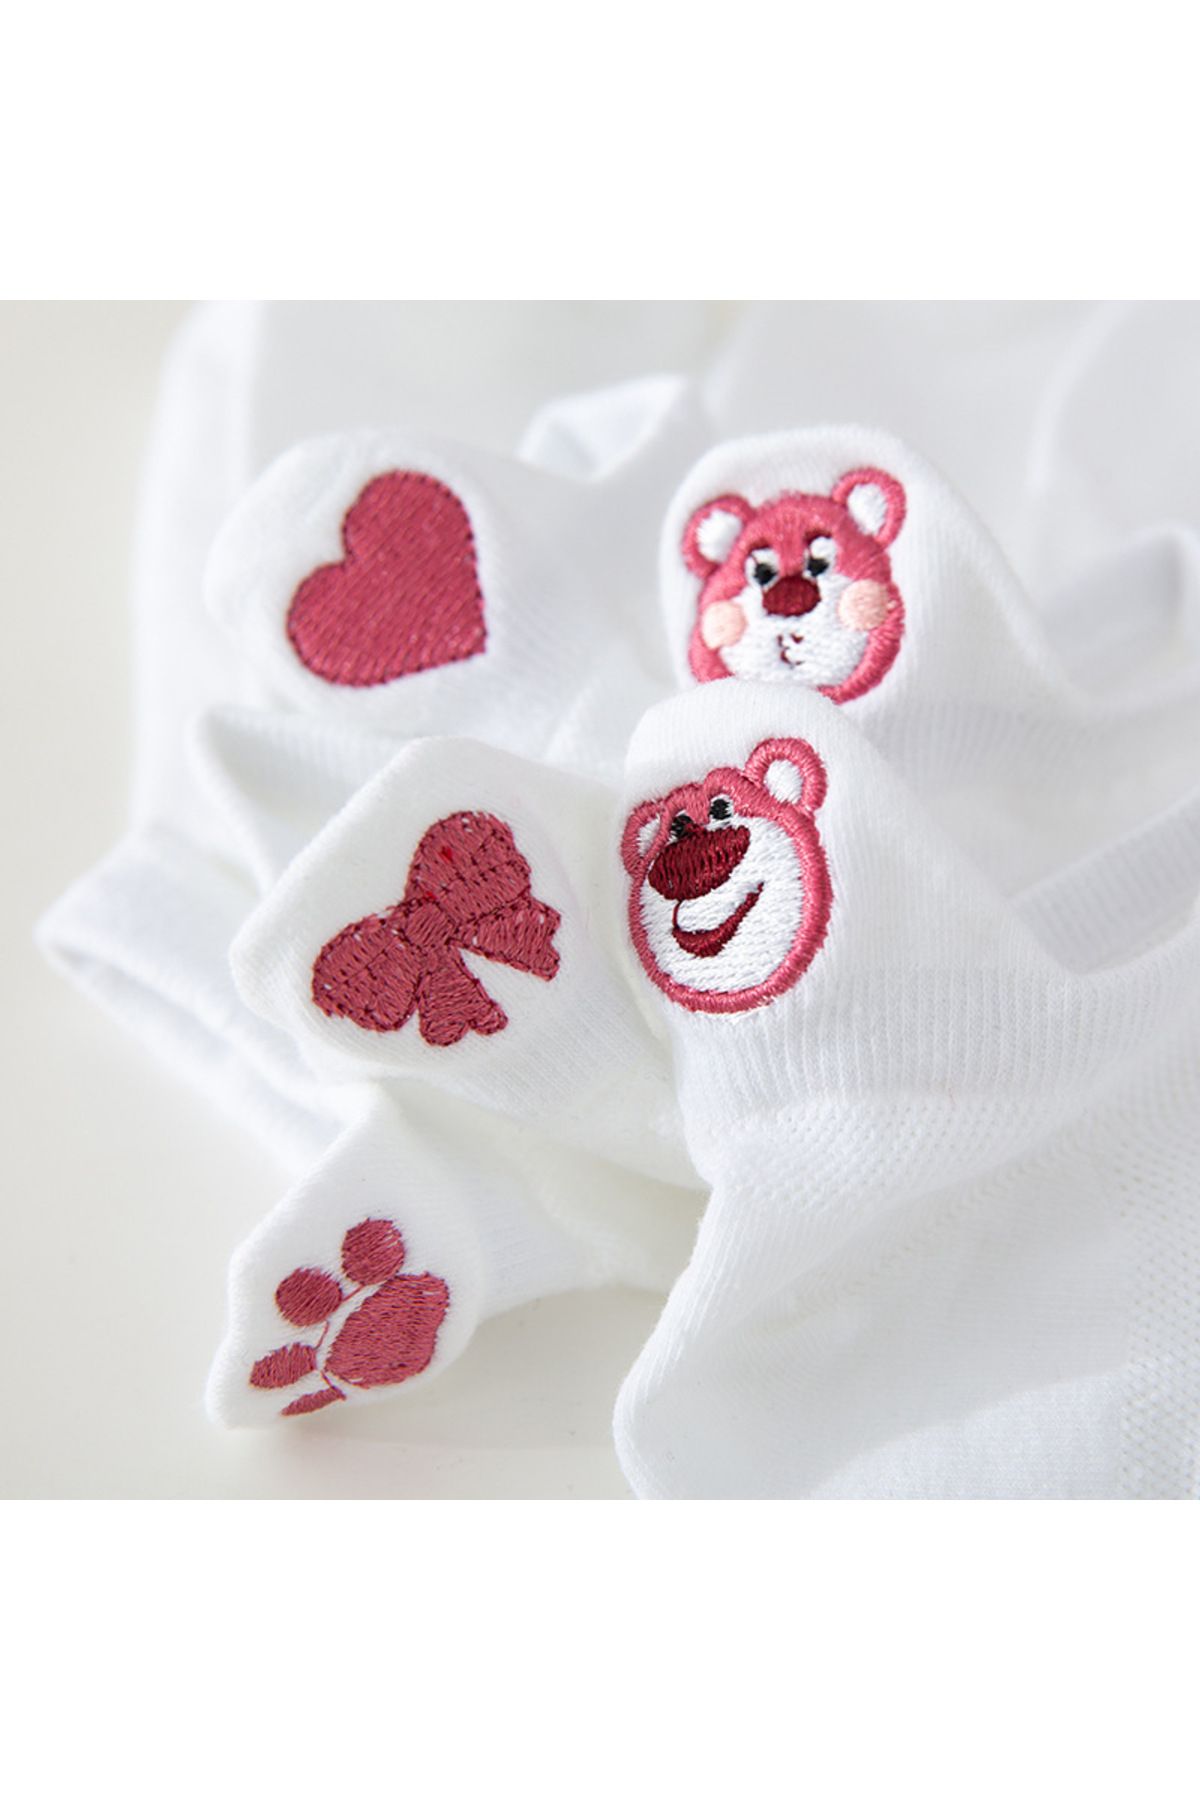 Sockmanya, 5 пар женских носков белого цвета с милыми плюшевыми мишками и сердечками с вышивкой, çrmnya-0655263a5iyhghyyn